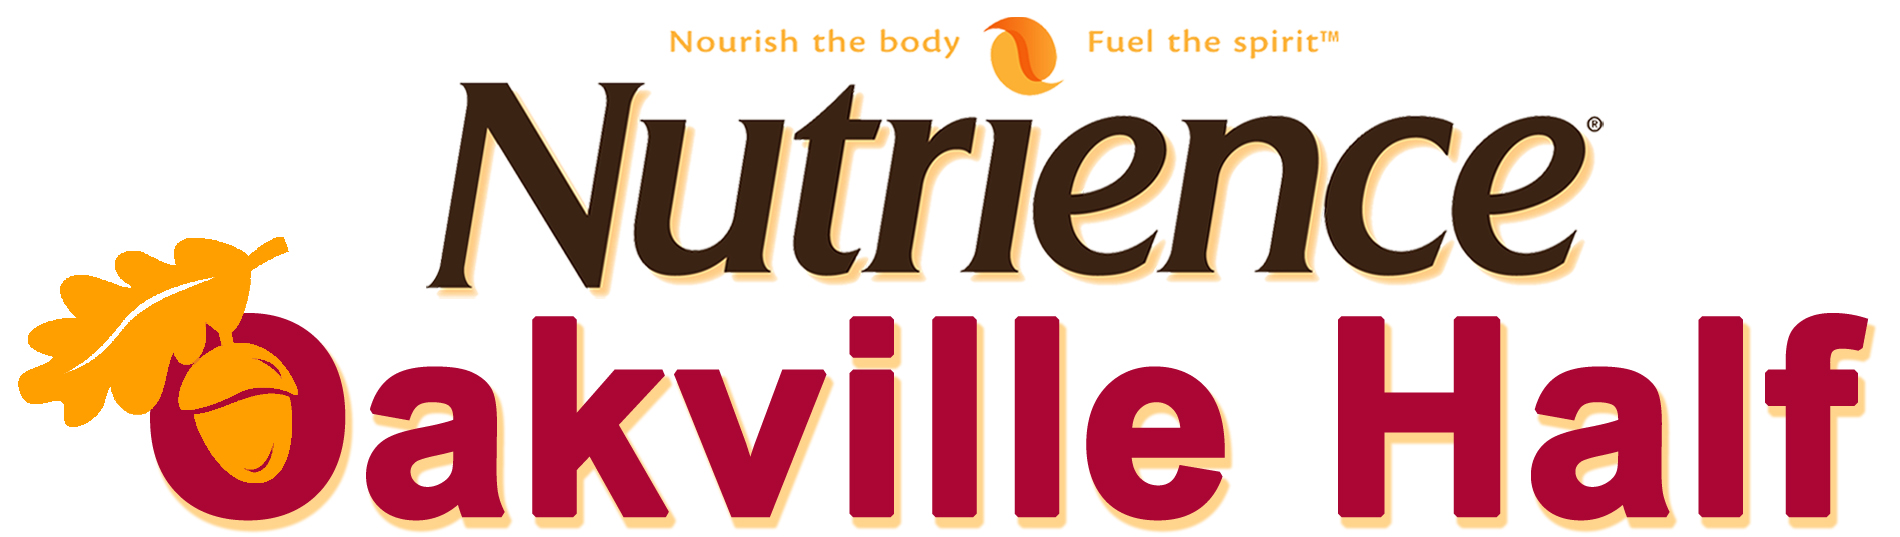 The Nutrience Oakville Half Marathon